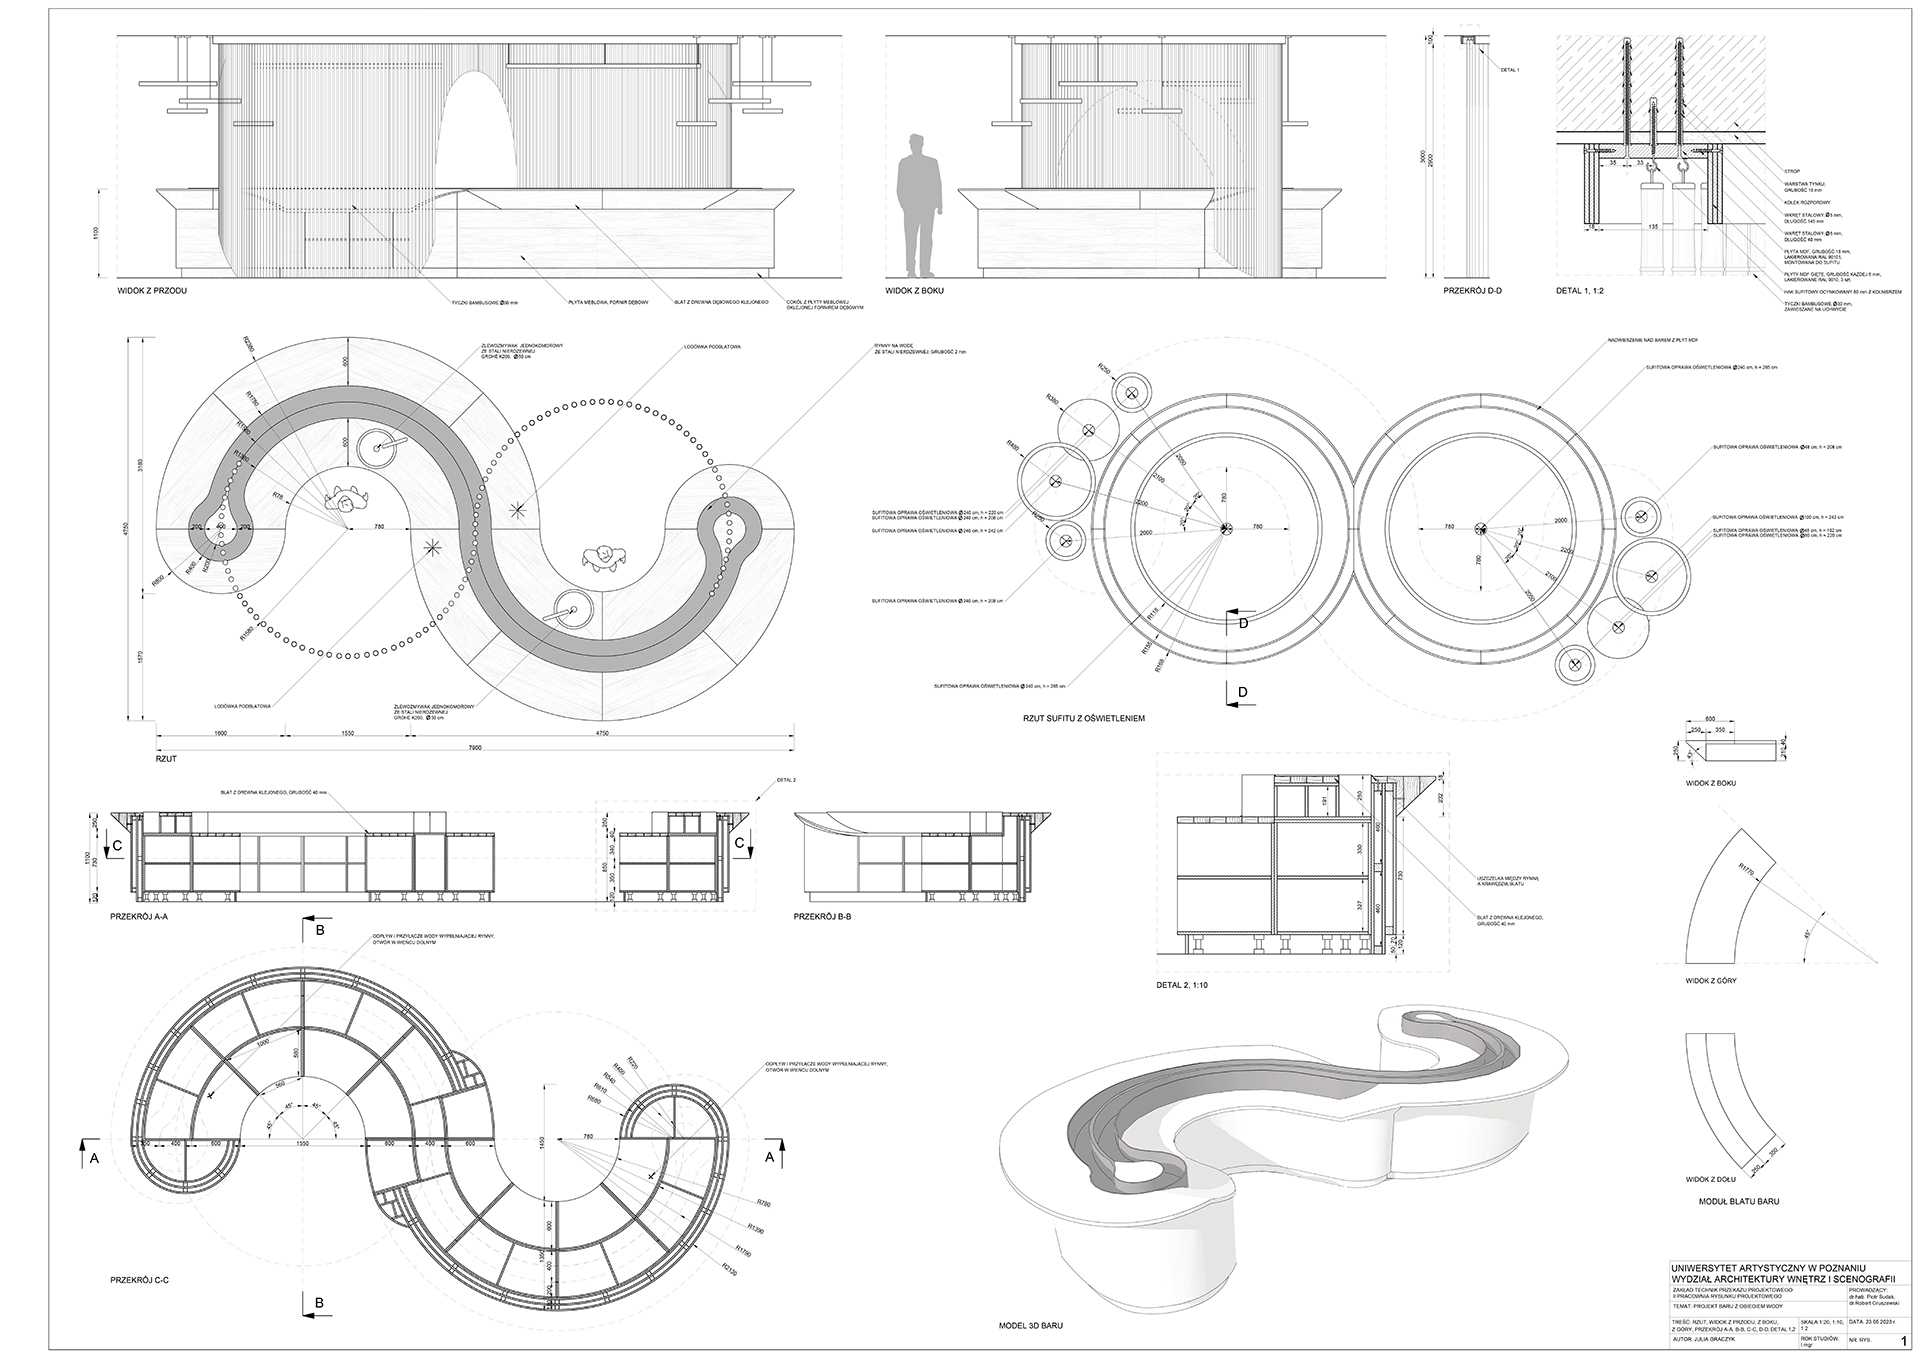 Projekt techniczny lady barowej opracowany zgodnie z zasadami rysunku projektowego zawierający informacje niezbędne do jego wykonania.